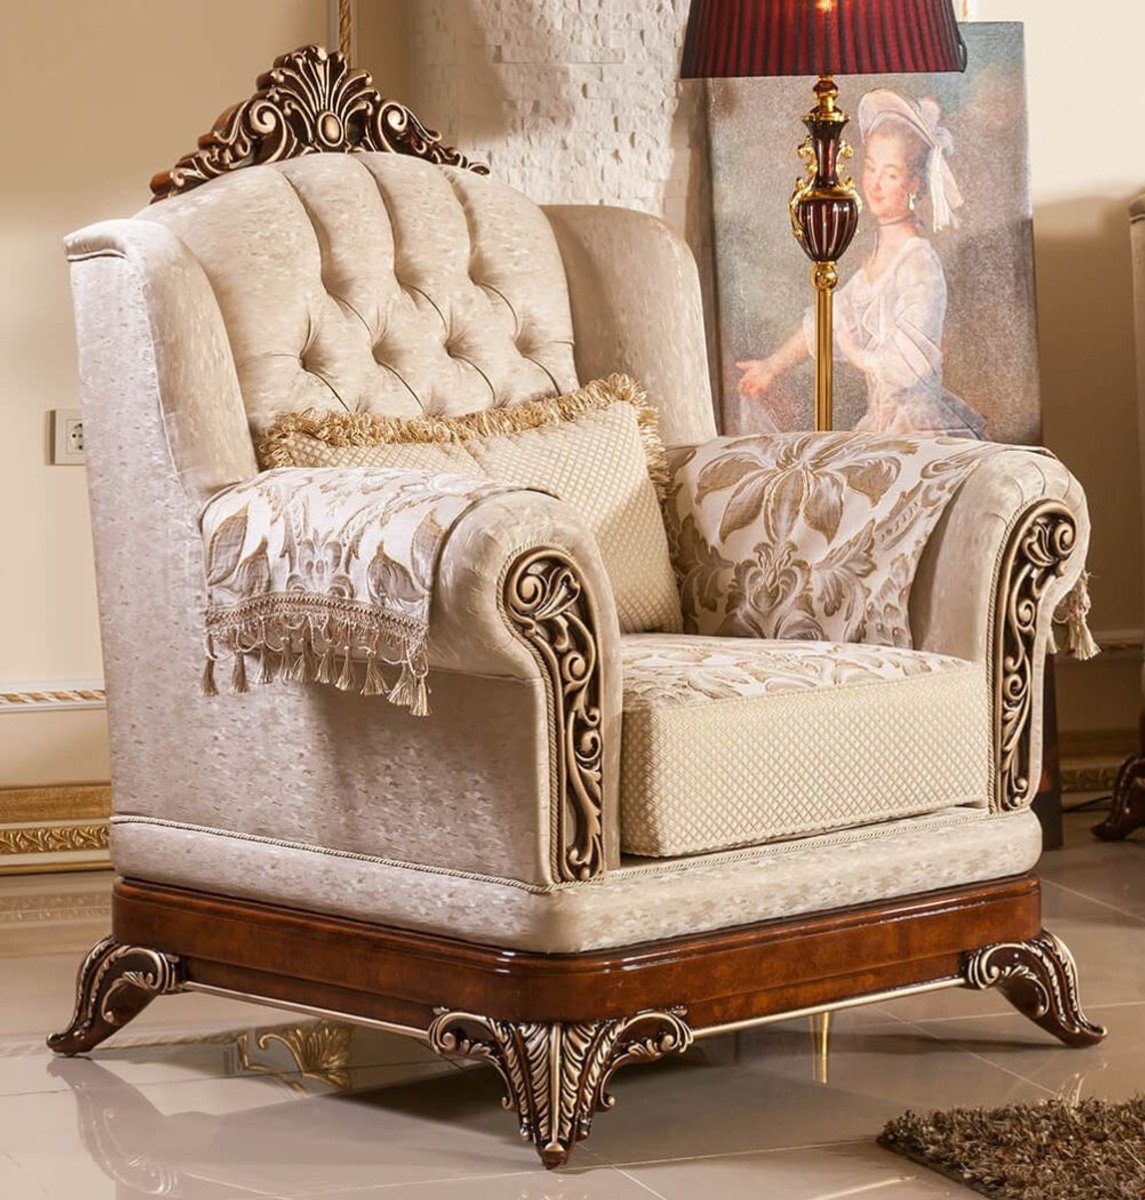 Casa Padrino Sessel Luxus Barock Sessel Gold / Braun / Bronzefarben - Prunkvoller Wohnzimmer Sessel mit elegantem Muster - Barock Wohnzimmer & Hotel Möbel - Edel & Prunkvoll